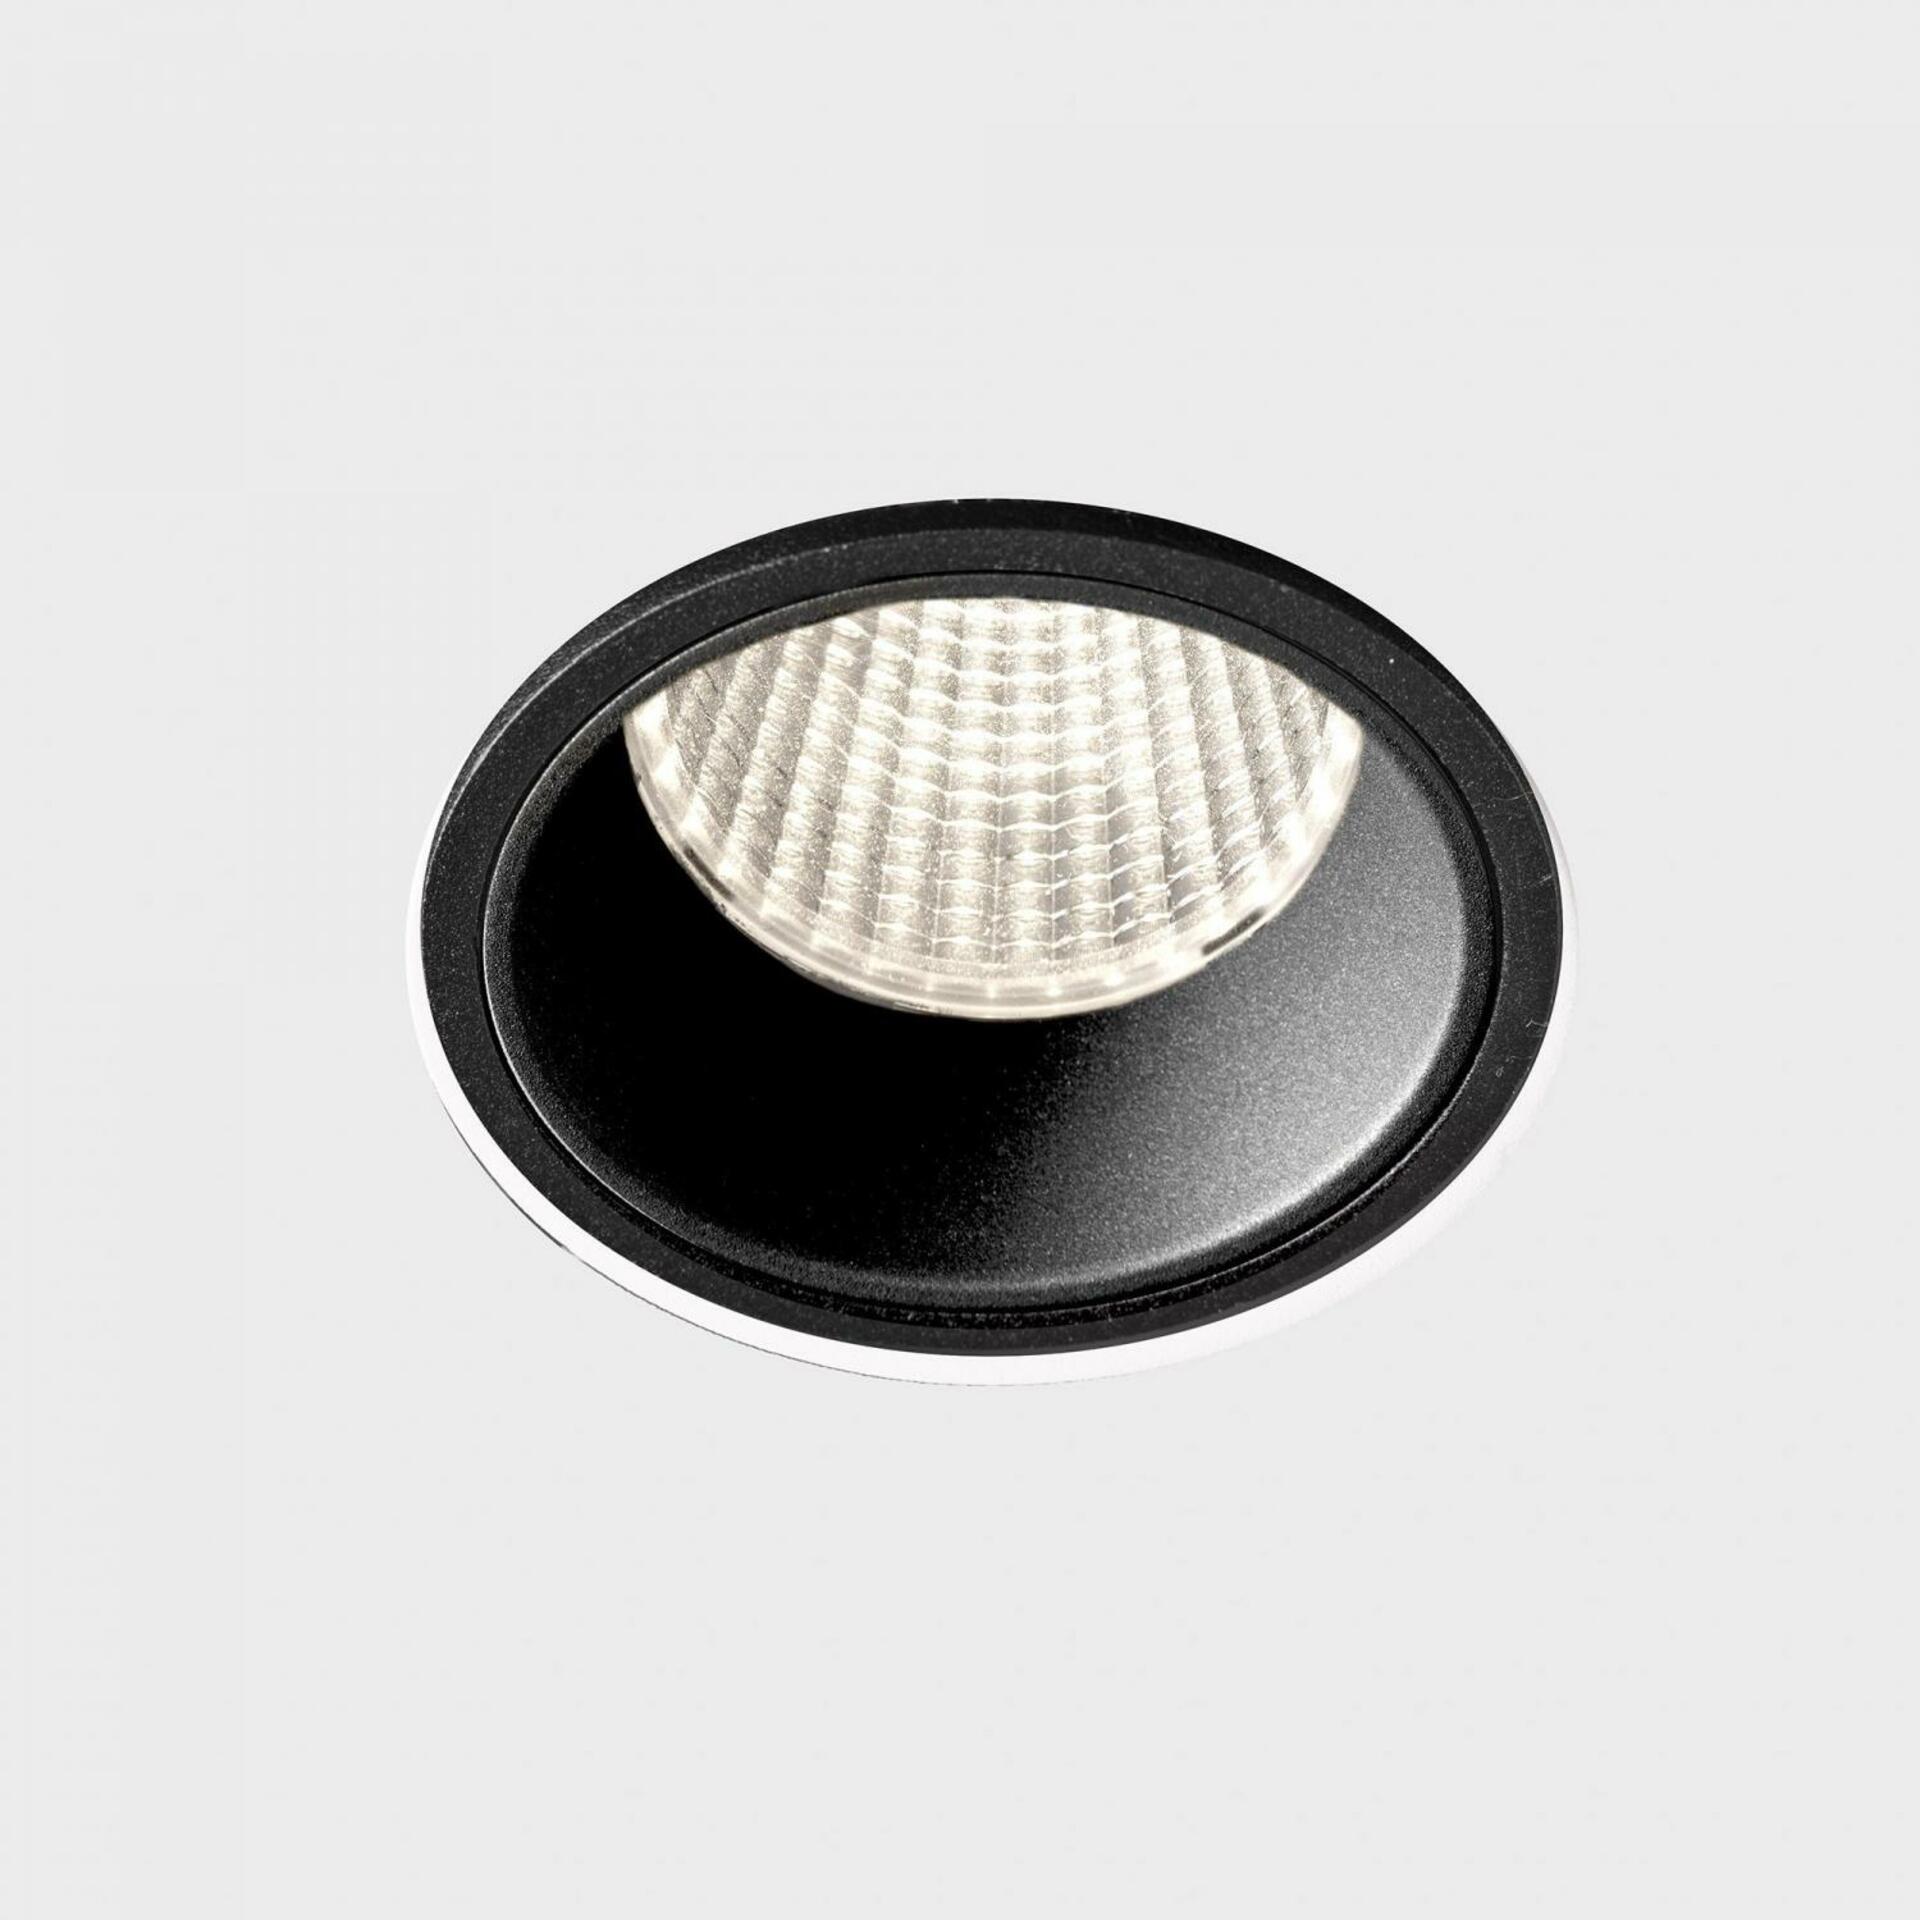 KOHL LIGHTING KOHL-Lighting VERSUS zapuštěné svítidlo s rámečkem pr. 80 mm černá 38° 15 W CRI 80 3000K 1.10V